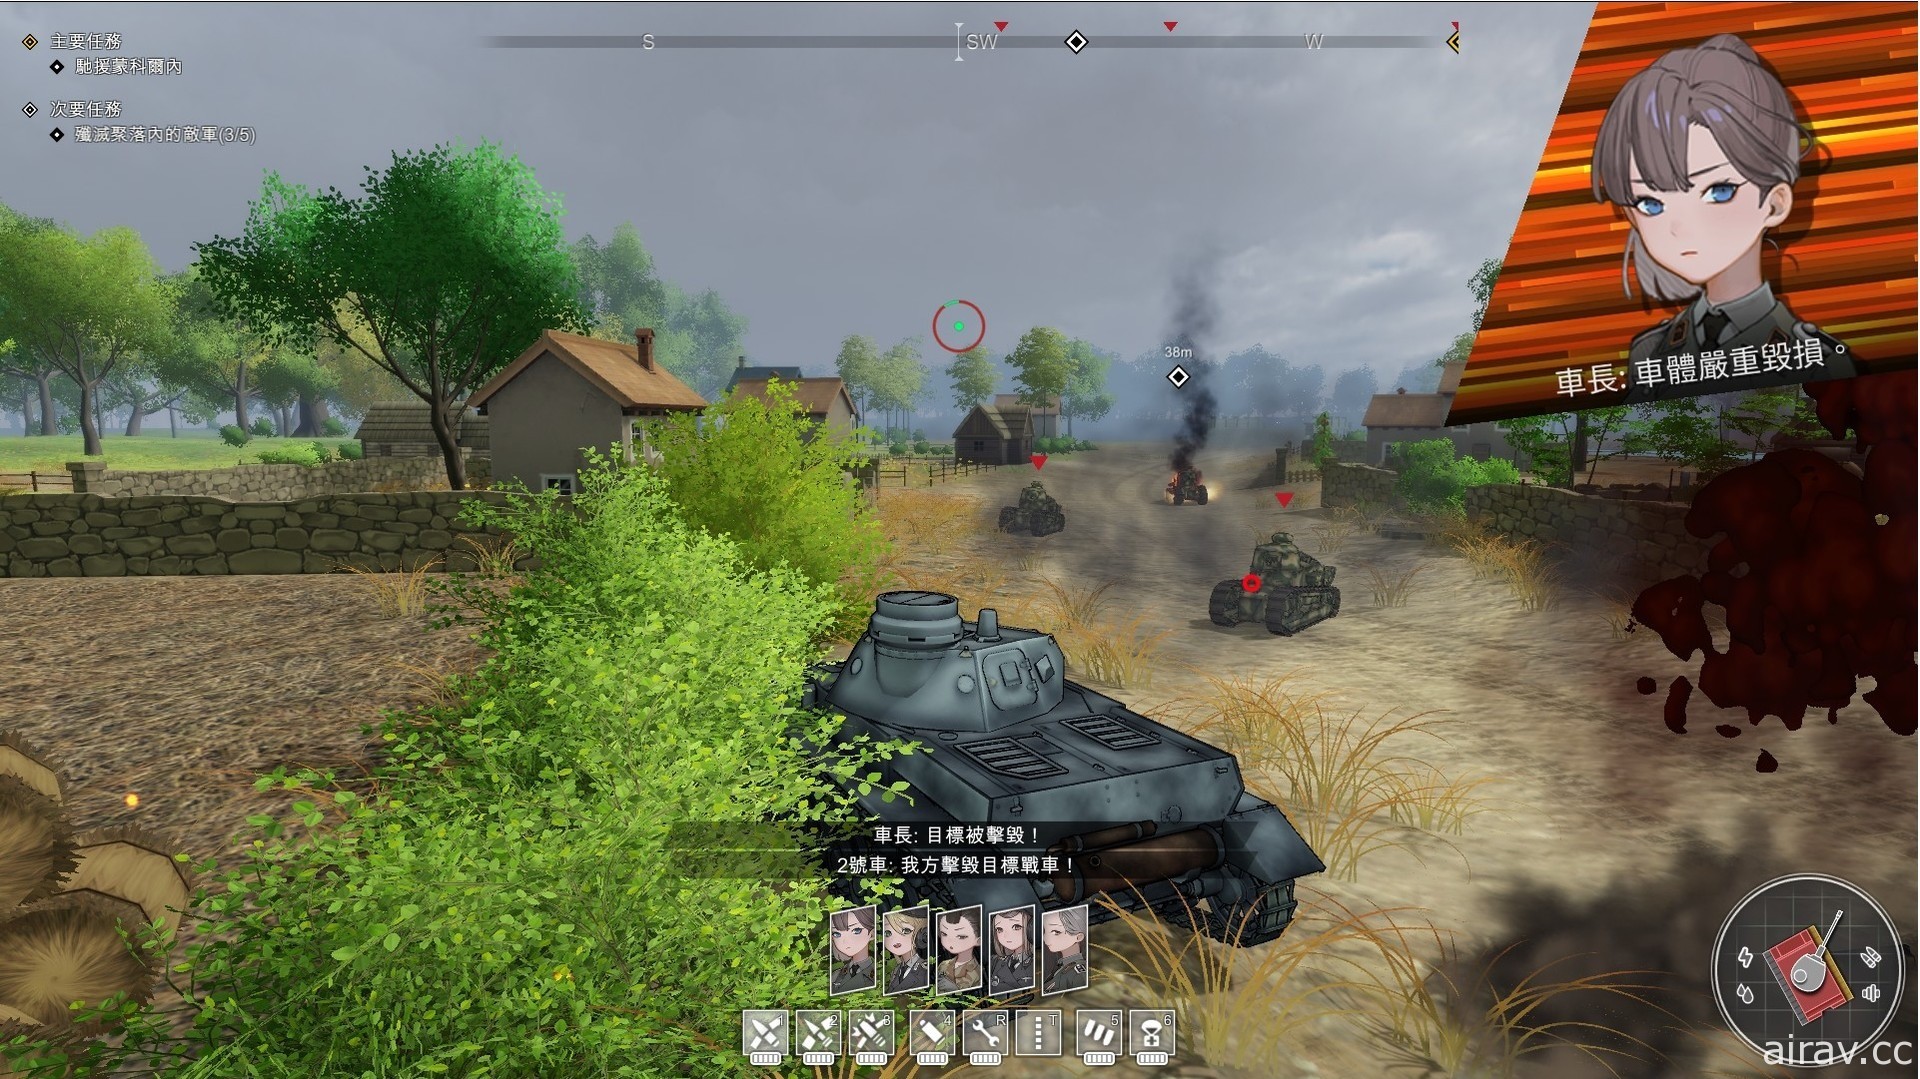 結合美少女與戰車動作遊戲《Panzer Knights》在 Steam 展開搶先體驗